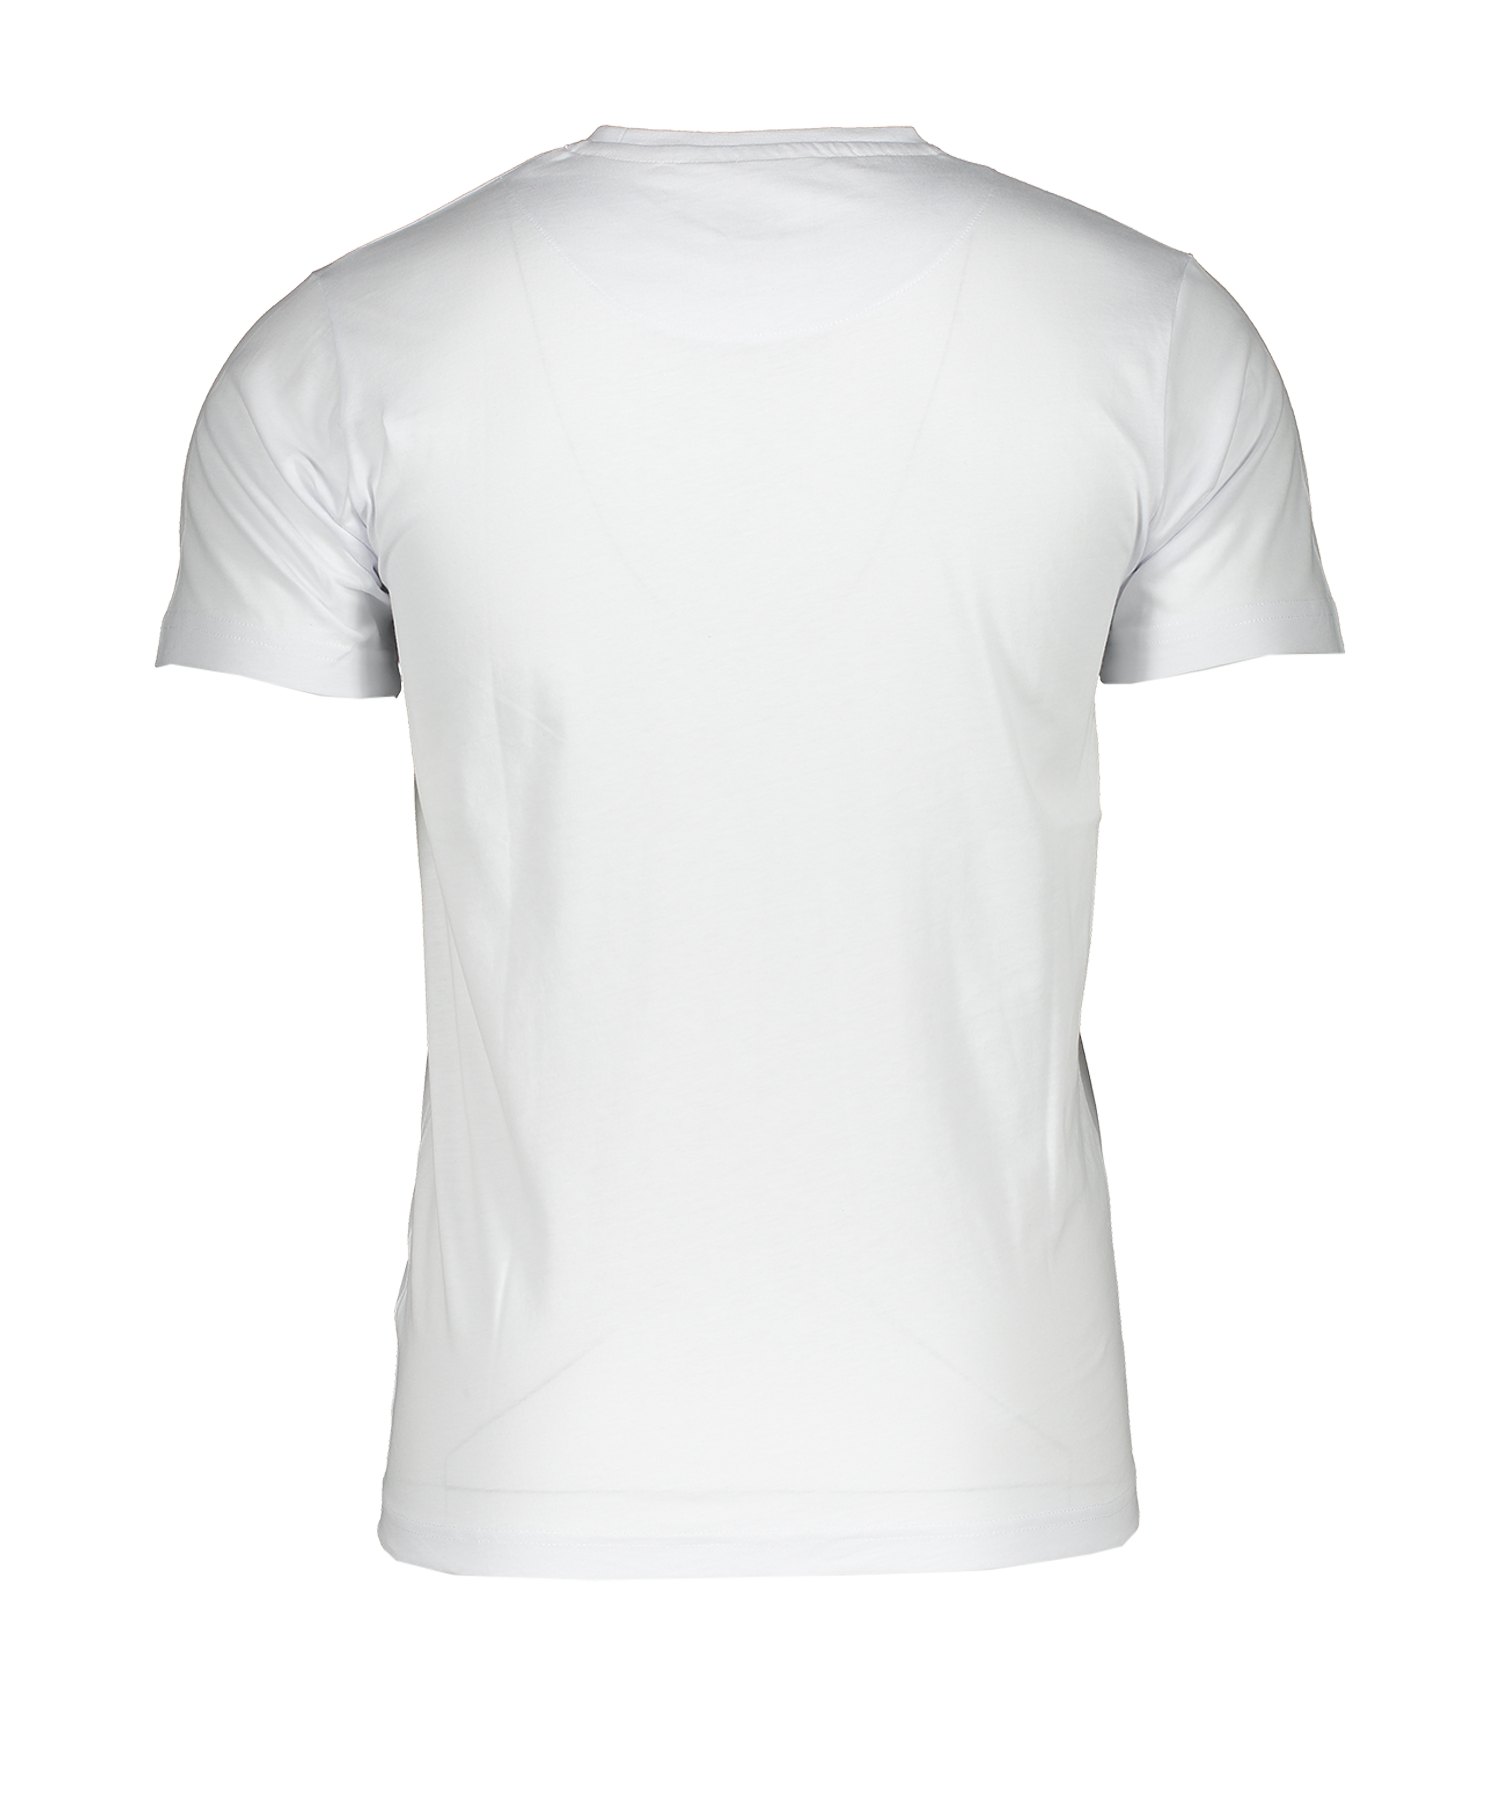 DFB Deutschland Teamgeist T-Shirt Grau